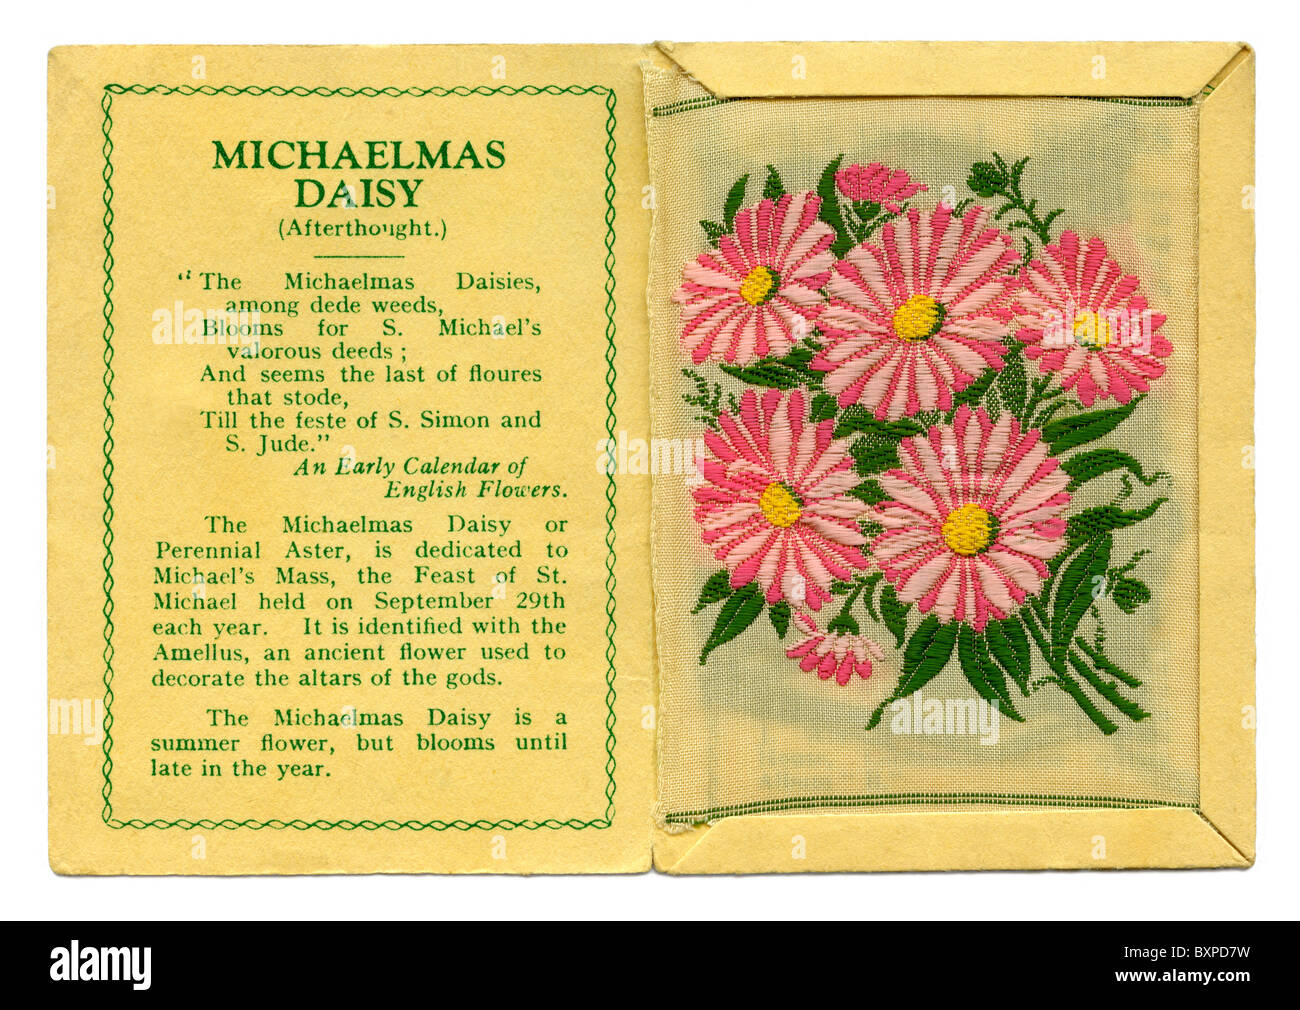 Fleurs Kensitas carte cigarette contenant un dossier à l'intérieur de fleurs en soie, donné dans les paquets de cigarettes en 1933 Banque D'Images